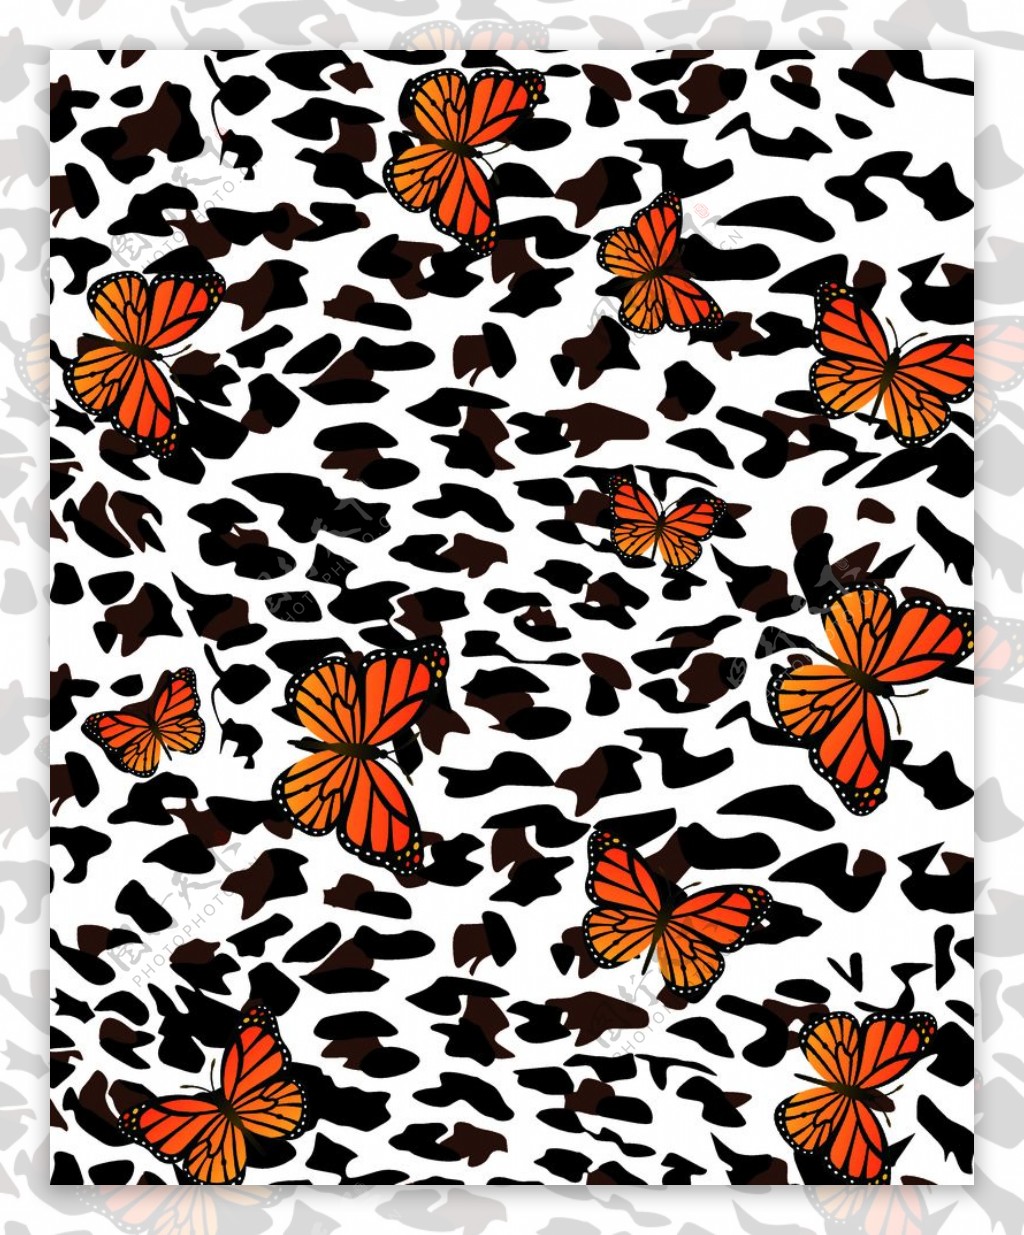 豹纹蝴蝶图片